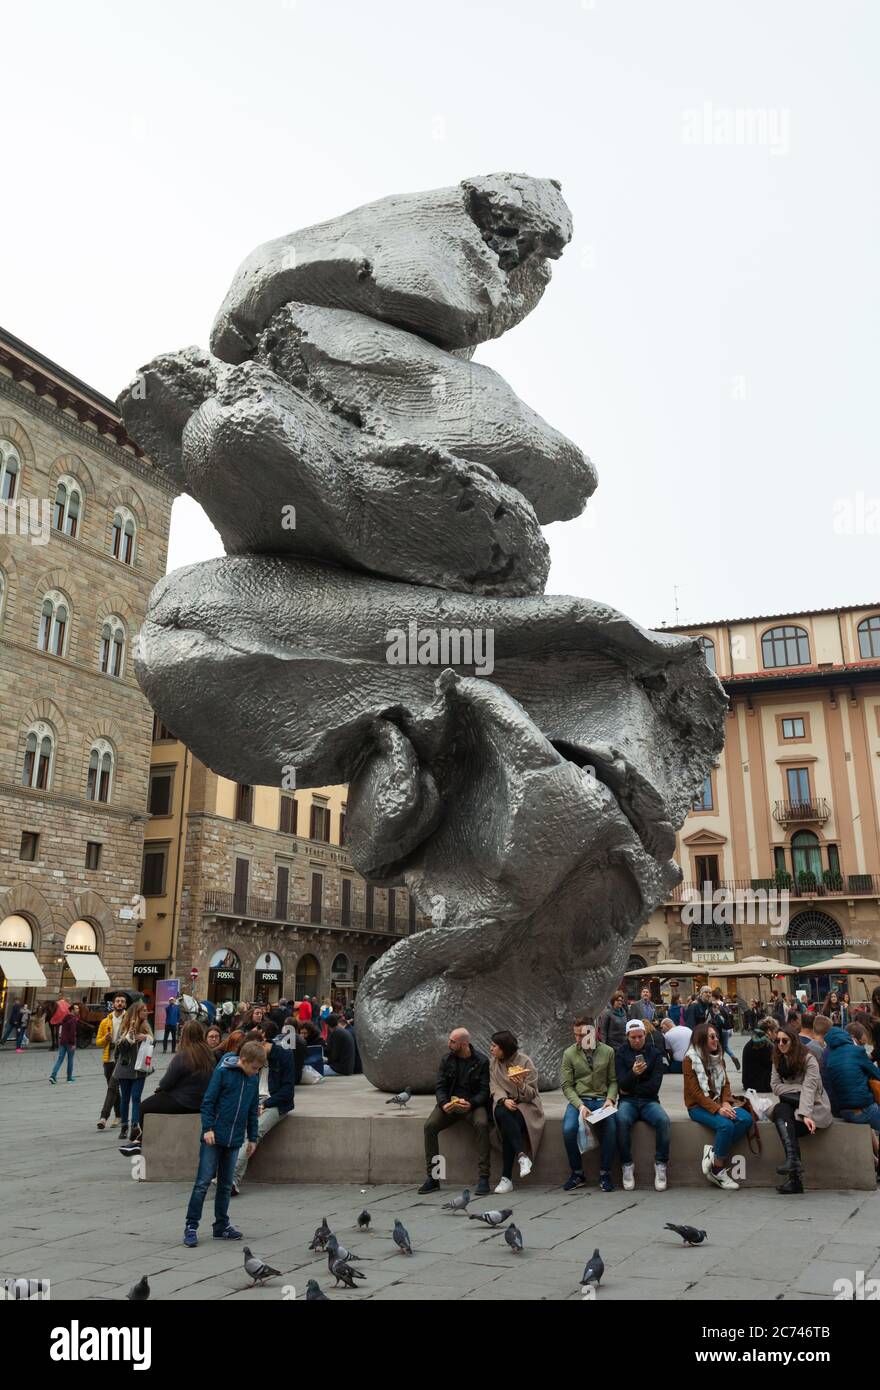 Florenz, Italien - 04. November 2017: Touristen gehen auf der Piazza Signoria mit der modernen Kunstskulptur Big Clay des Künstlers Urs Fischer in Florenz Stockfoto